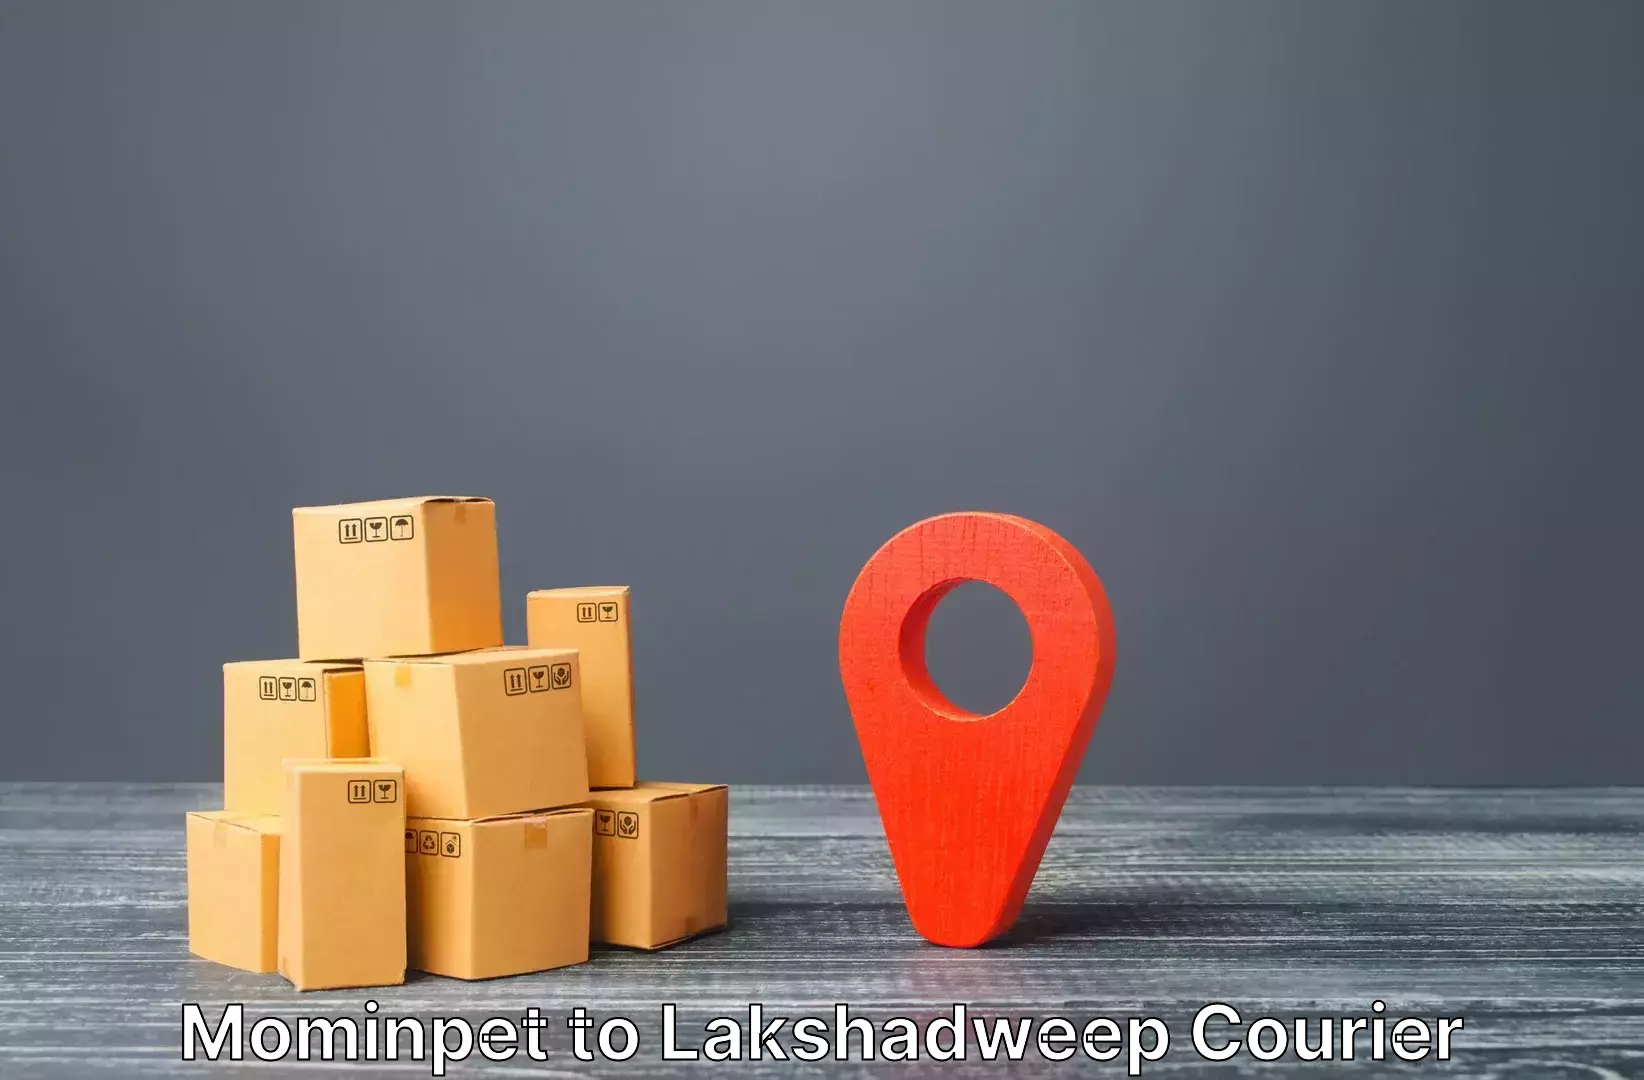 Digital baggage courier Mominpet to Lakshadweep